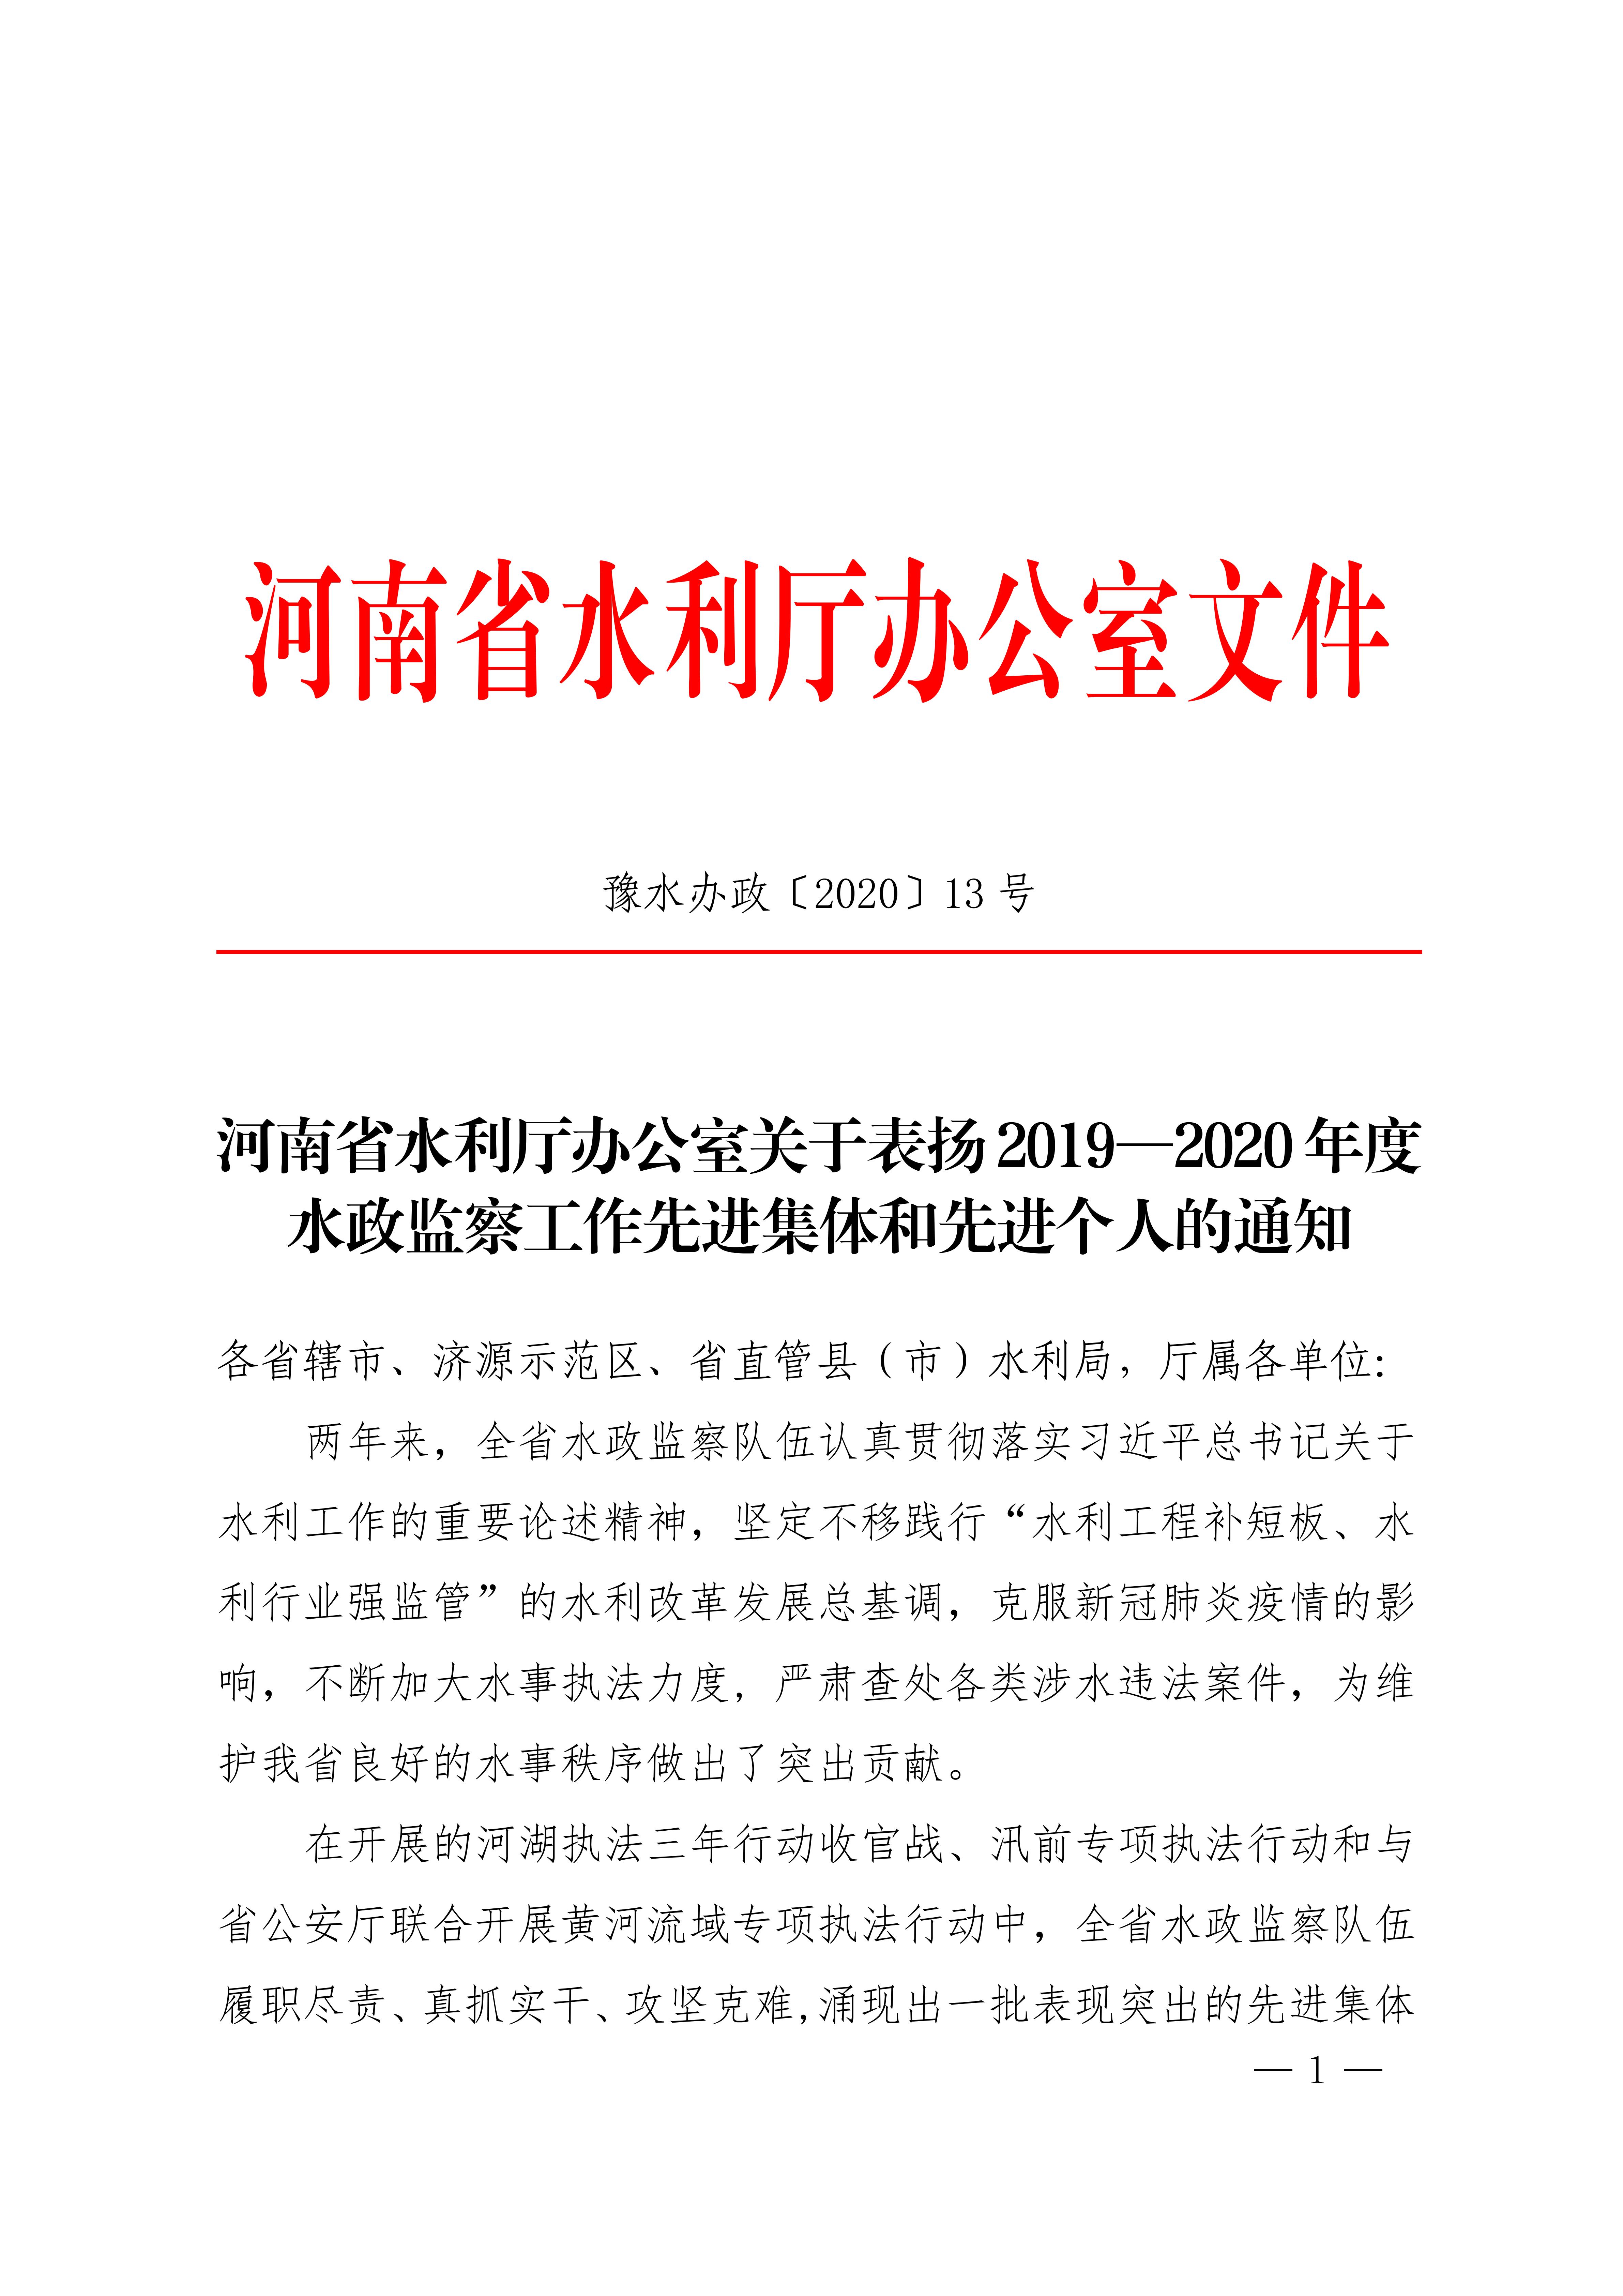 河南省水利厅关于表扬20192020年度水政监察工作先进集体和先进个人的